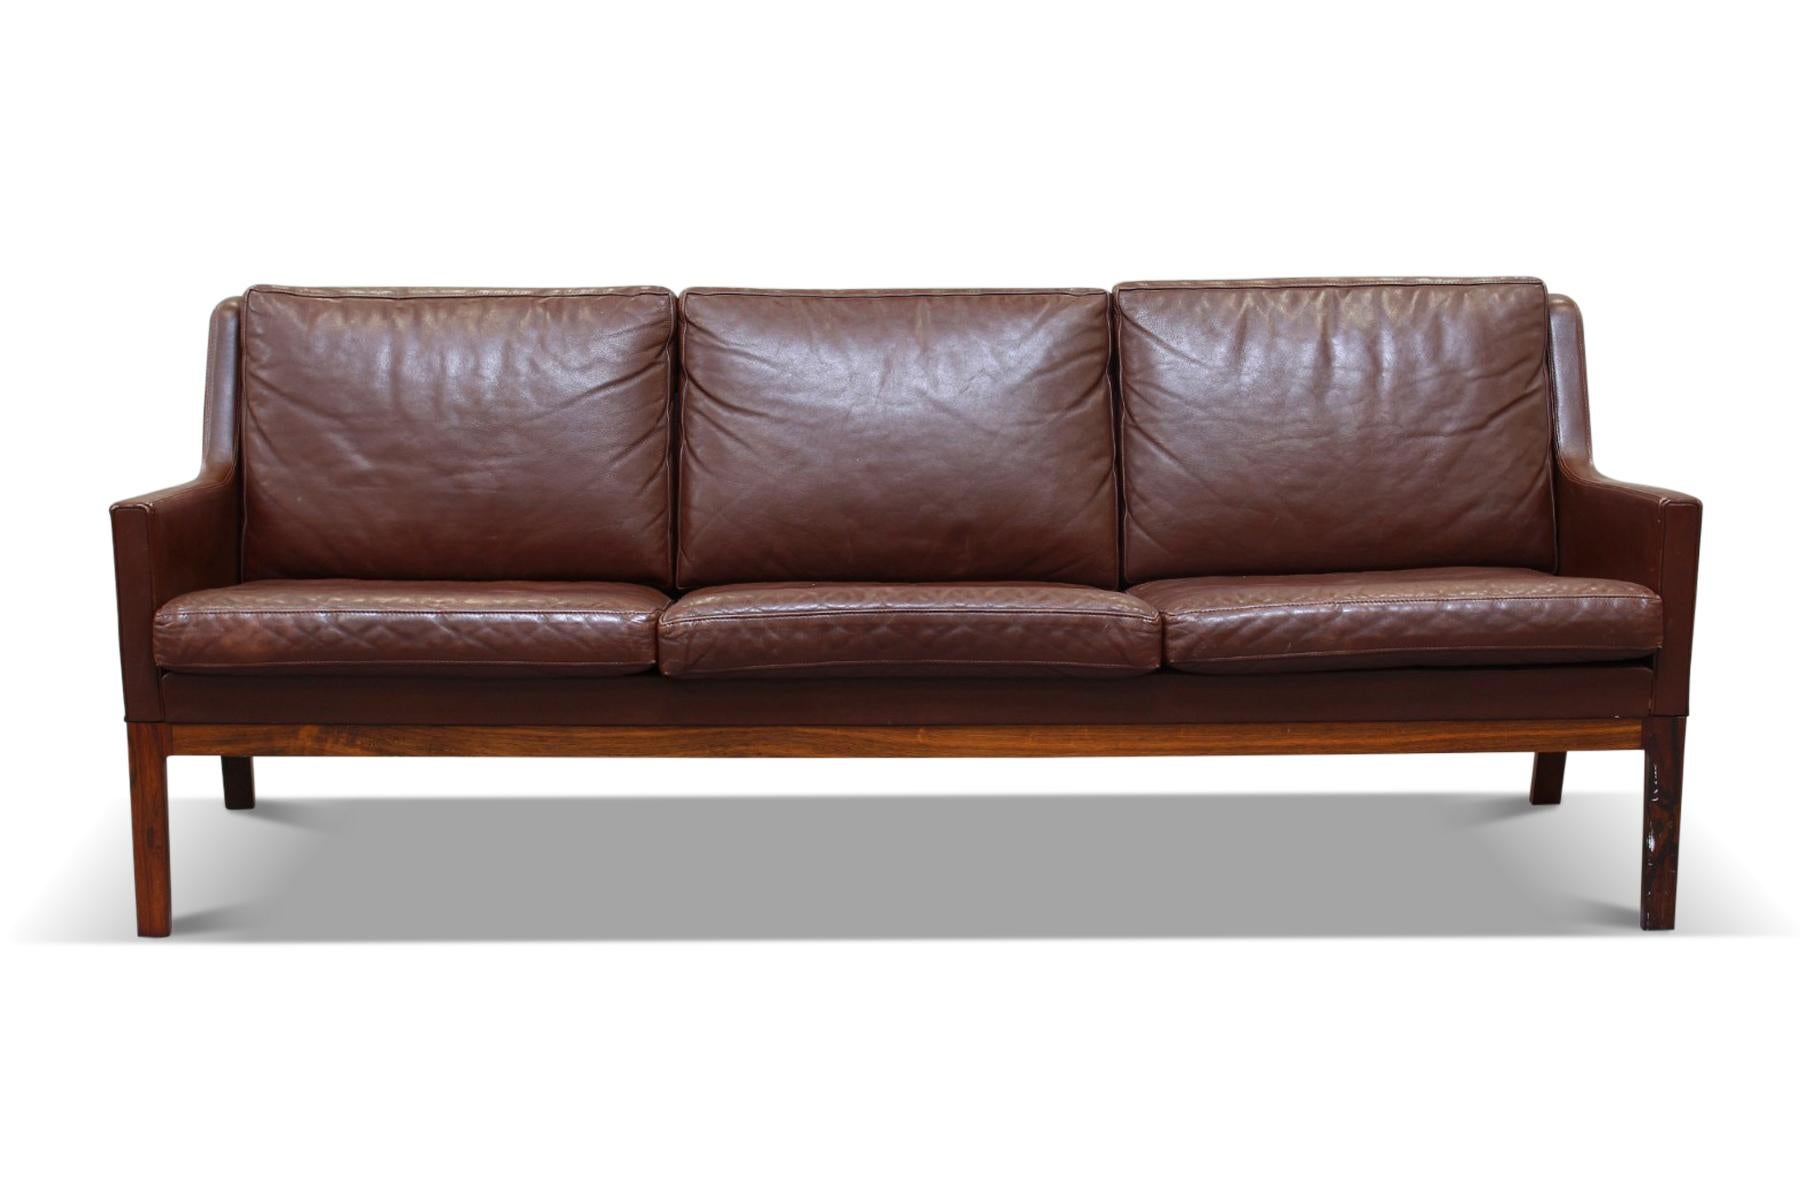 Other Three Seat Brown Leather Sofa by Kai Lyngfeldt Larsen